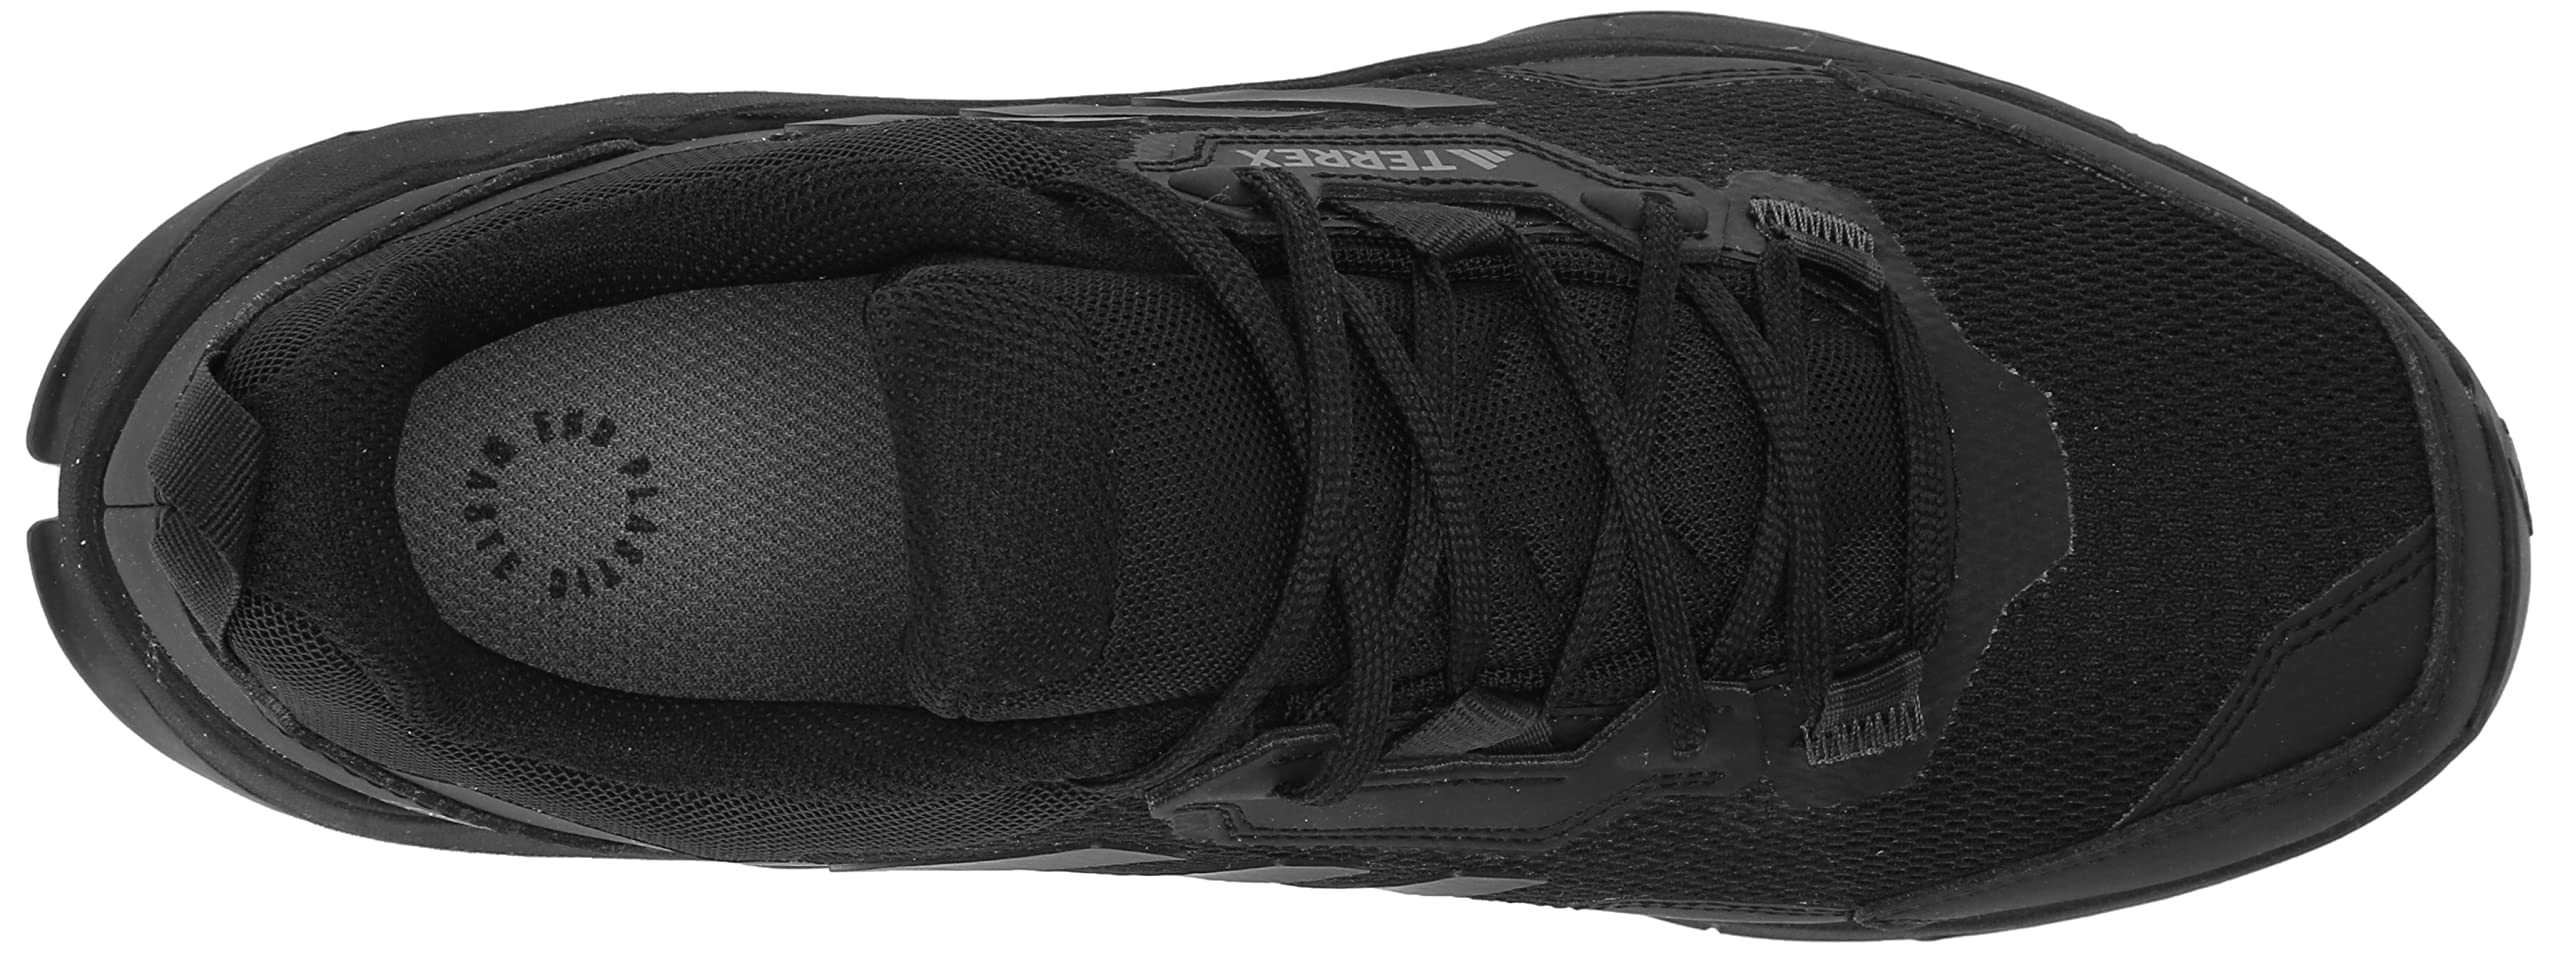 adidas mens Terrex AX4 Core Black/Carbon/Grey 10.5